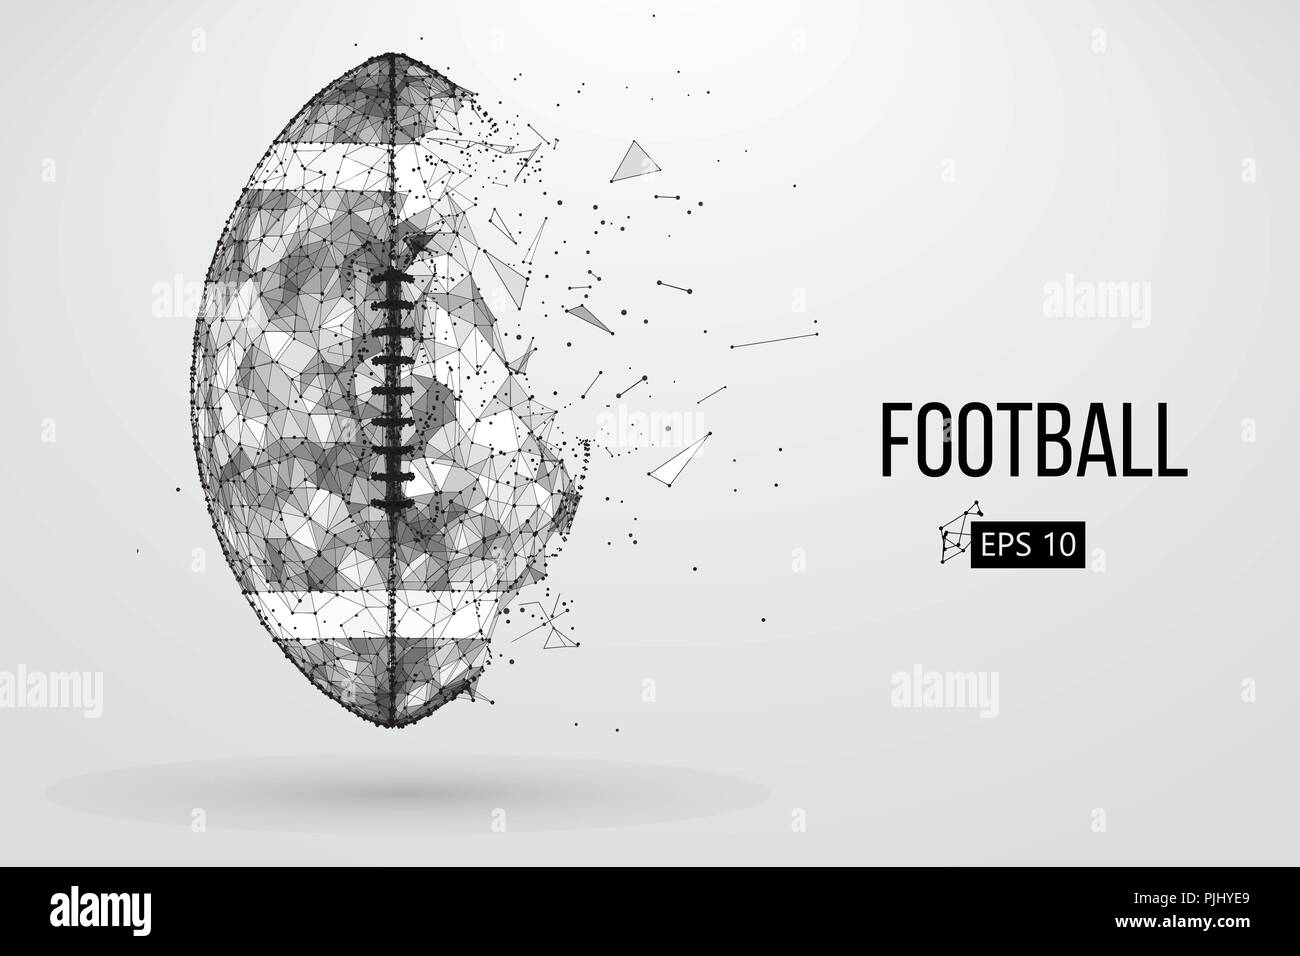 Silhouette einer Fußball-Ball. Punkte, Linien, Dreiecke, Text, Farbe, Effekte und Hintergrund auf einem separaten Layer, Farbe kann mit einem Klick geändert werden. Vec Stock Vektor